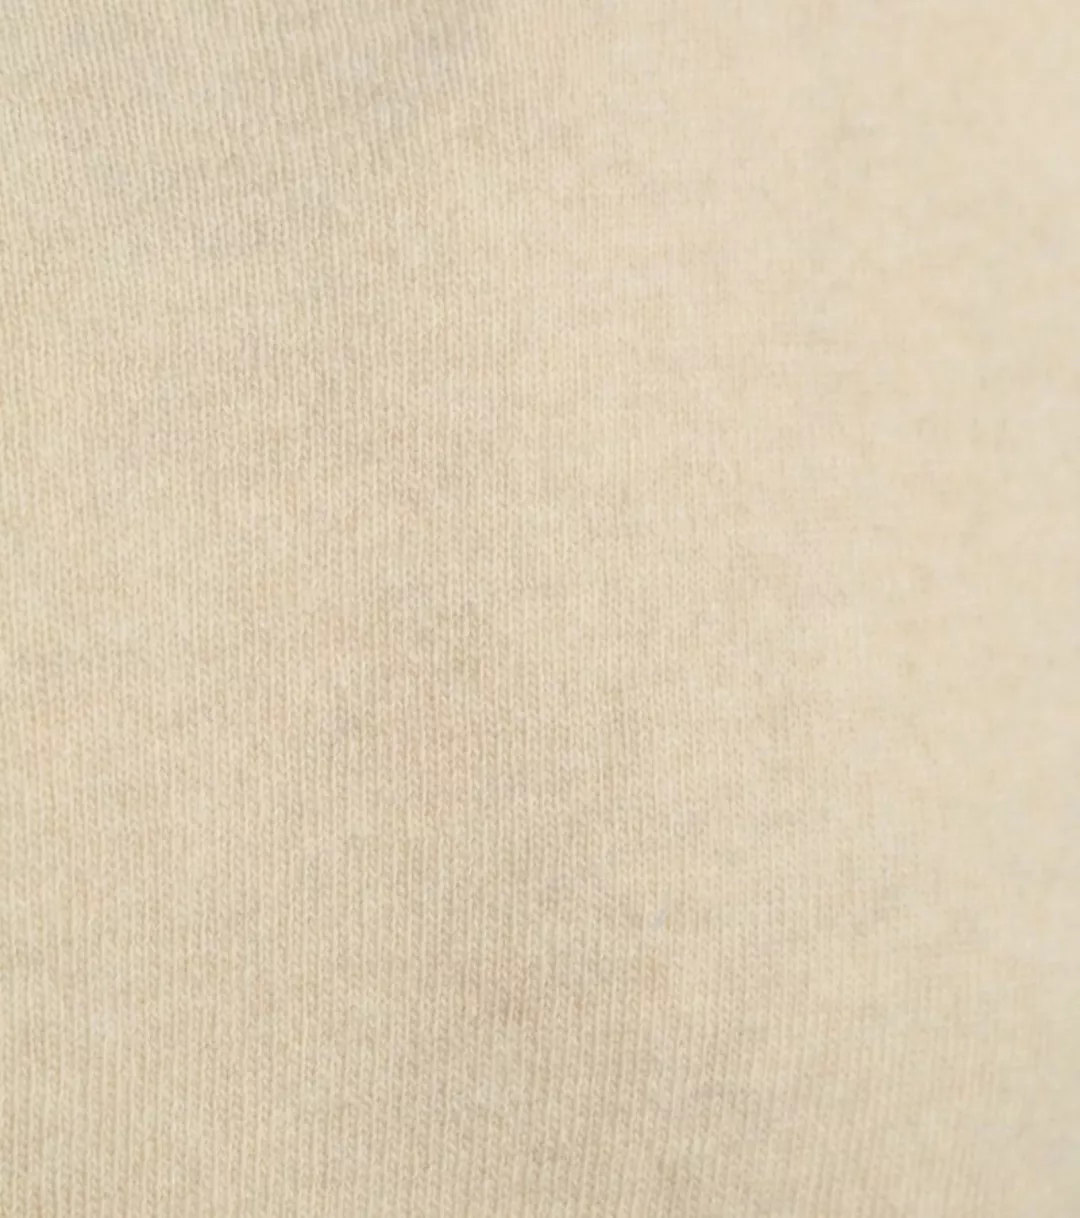 Colorful Standard Merino Pullover Beige - Größe XXL günstig online kaufen